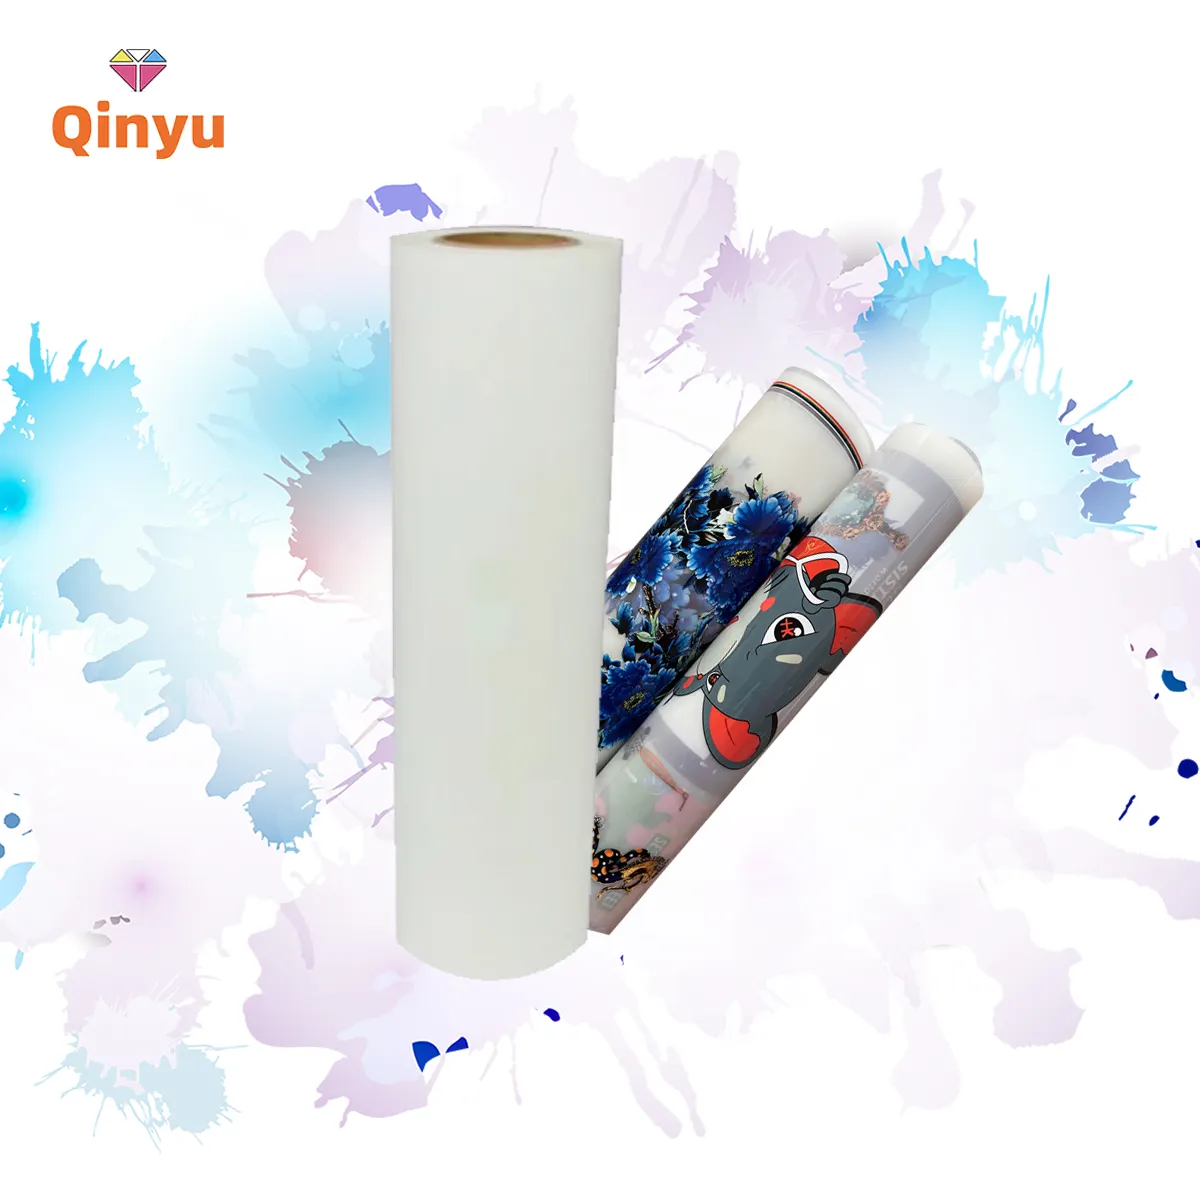 Qinyu alta qualidade 30cm DTF casca quente e casca fria premium transferência de calor adesivo pet filme para a indústria dtf